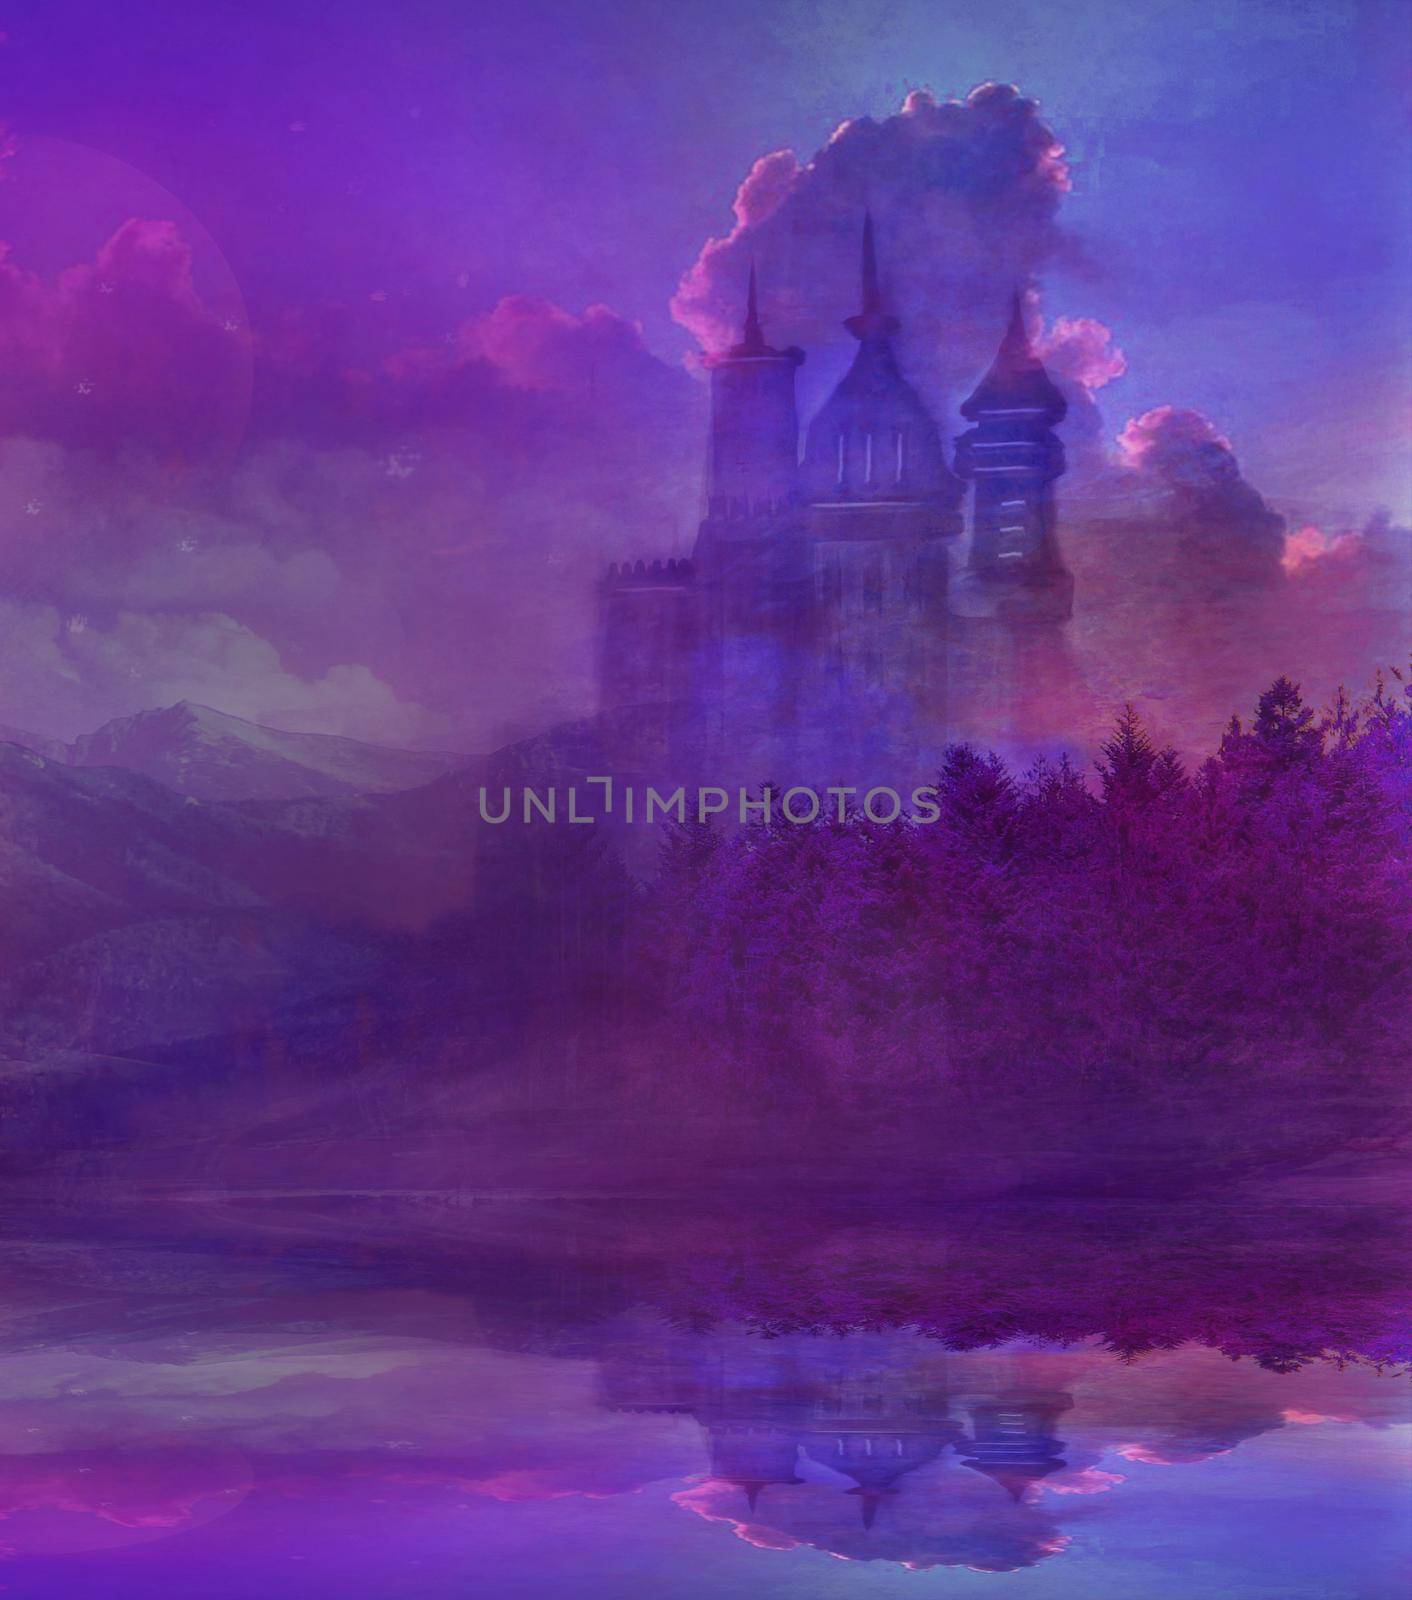 Abstract fairytale castle